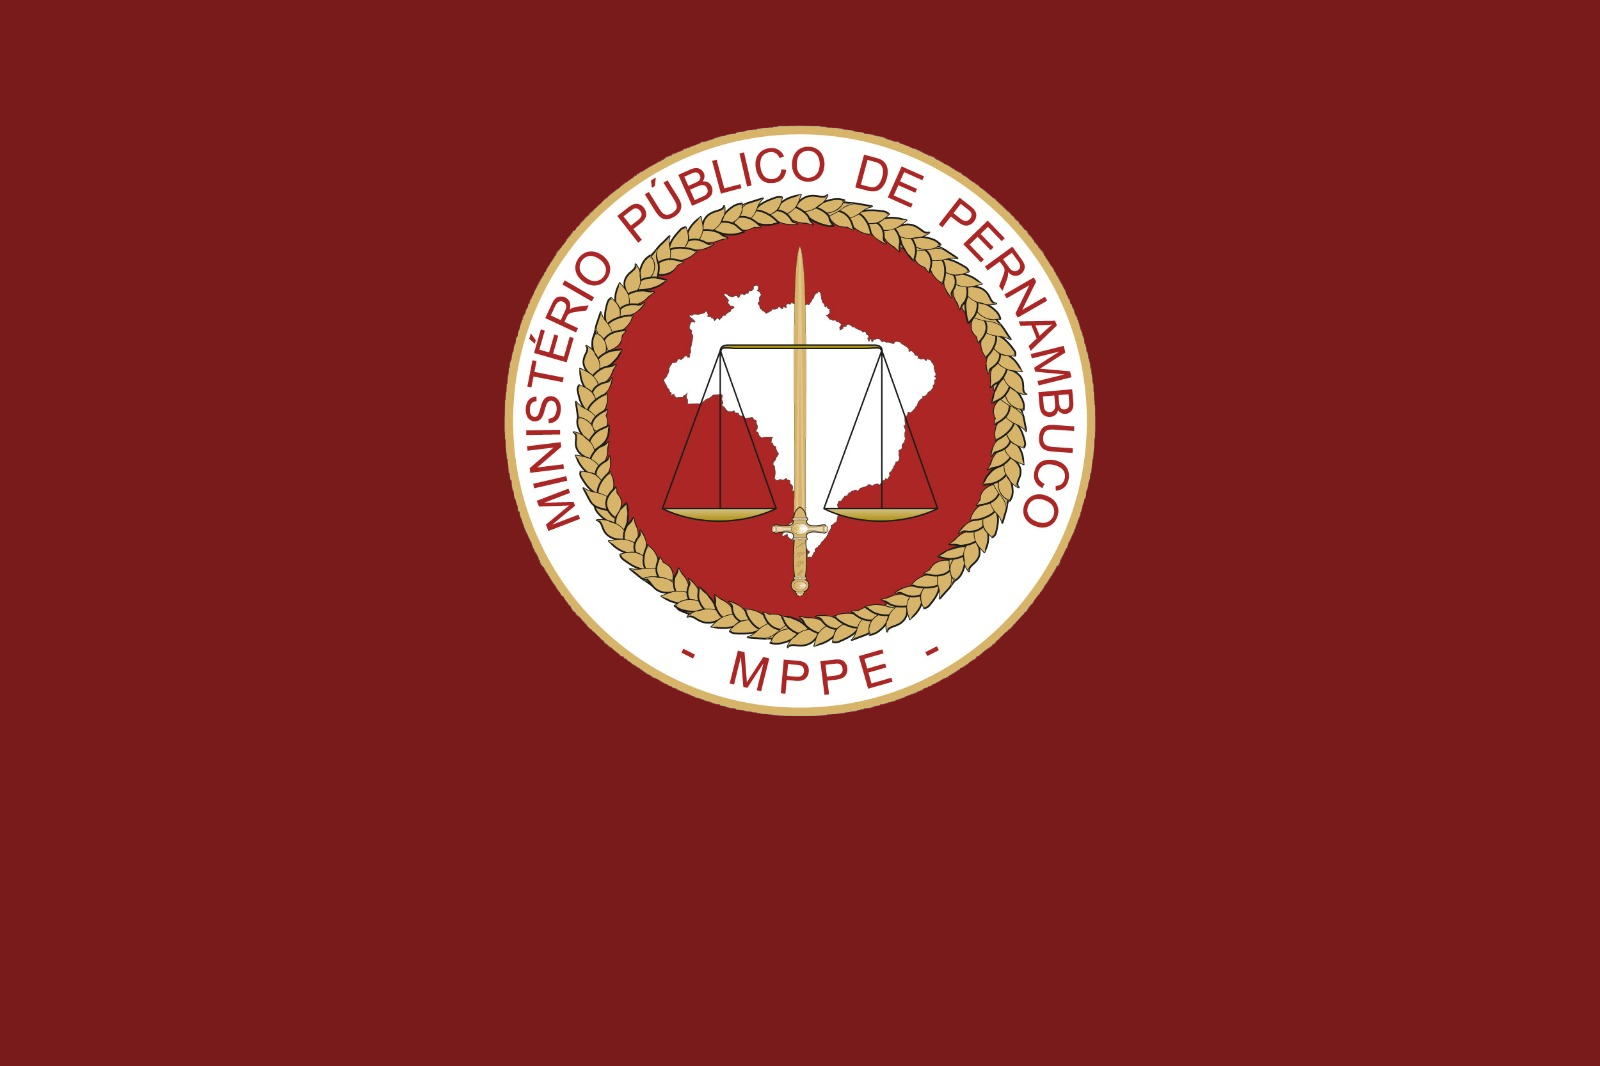 Retângulo vermelho com o brasão do MPPE na parte superior